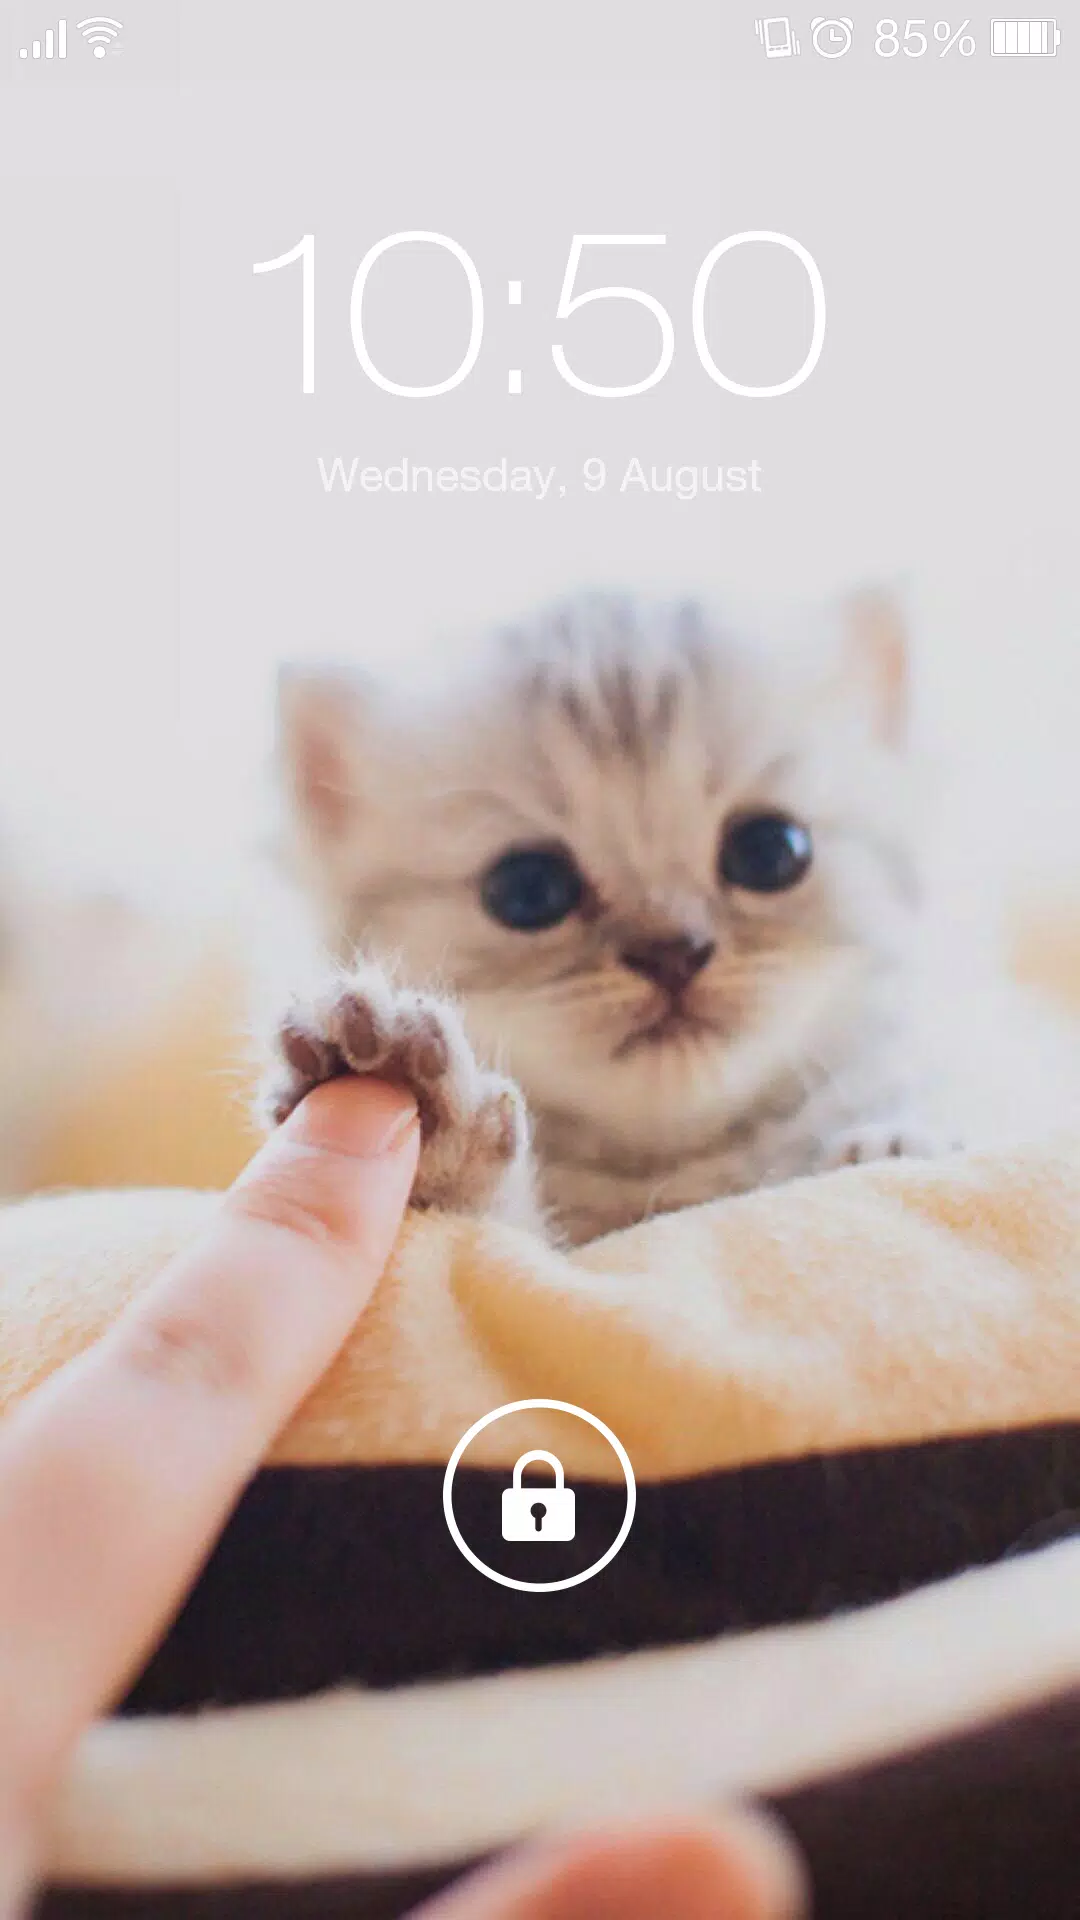 Tải xuống APK Hình Nền Mèo Dễ Thương & Màn Hình Khóa QHD cho Android